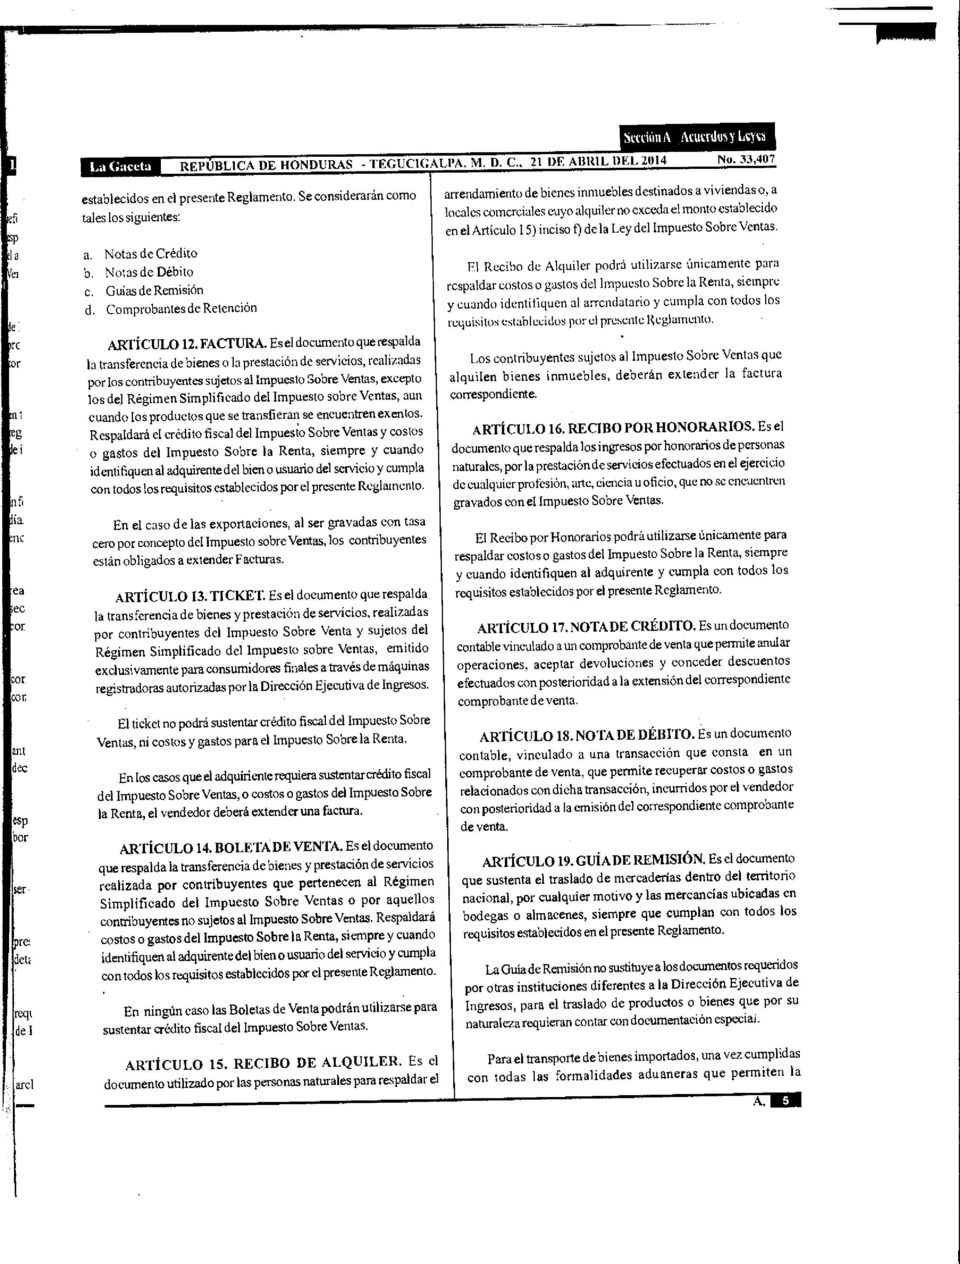 Guías de Remisión d. Comprobantes de Retención ARTÍCULO 12. FACTURA.